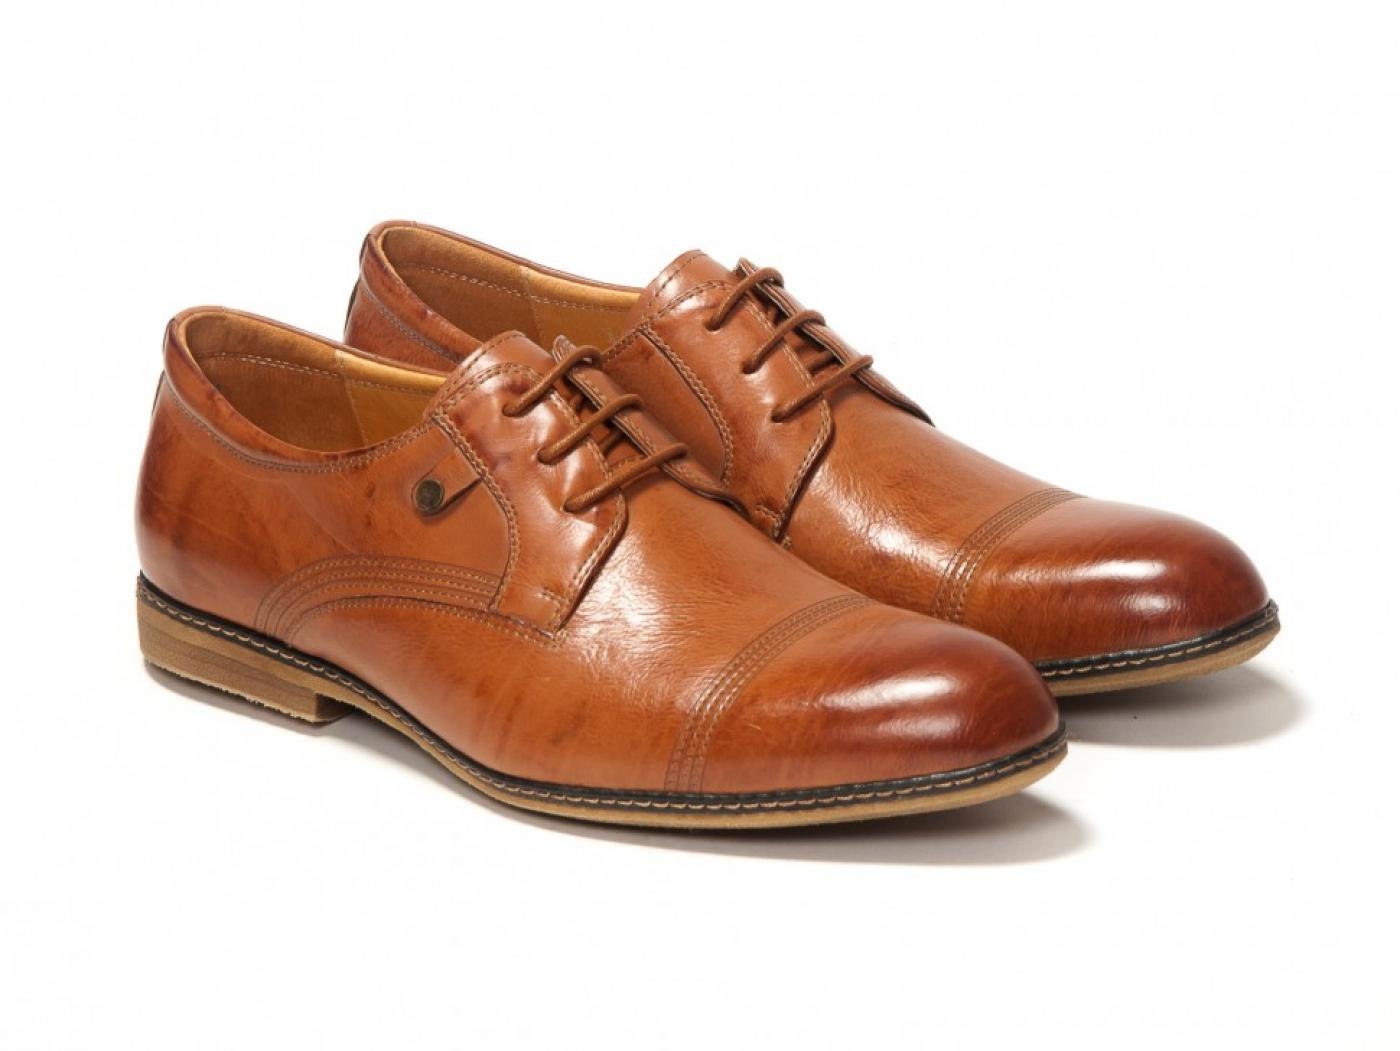 Hans - мужские коричневые кожаные ботинки - 09848214